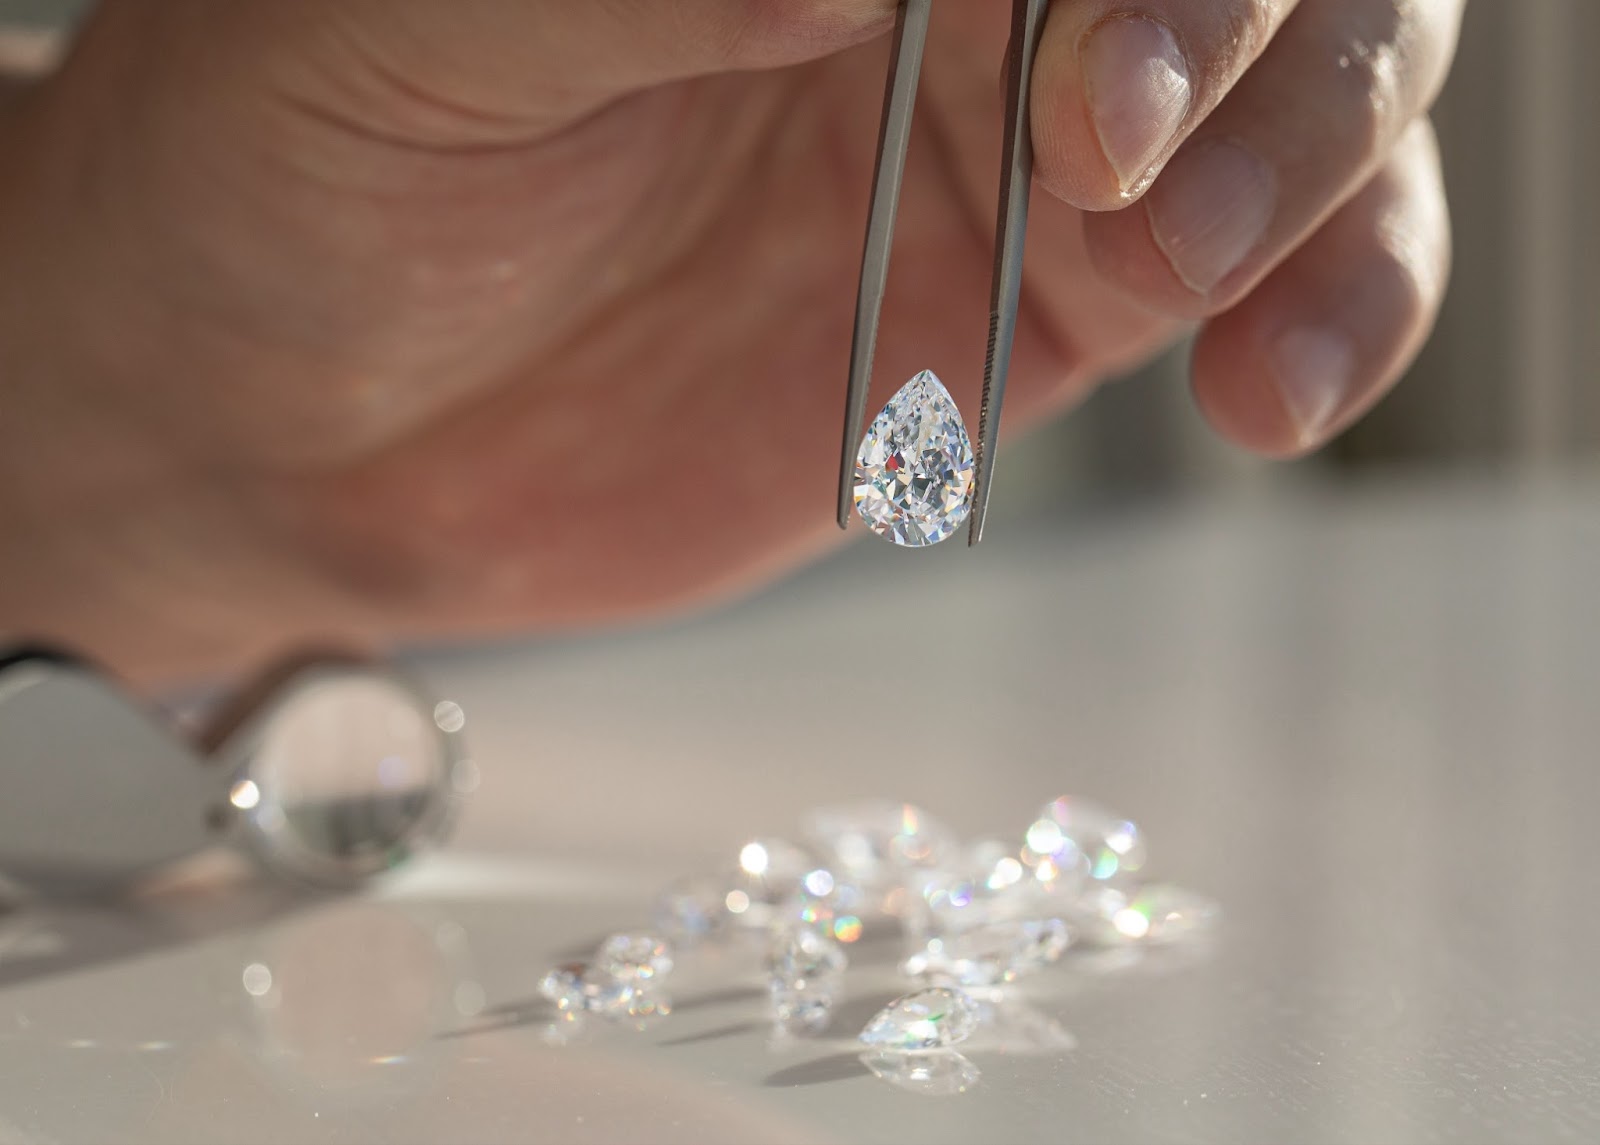 Abbildung eines strahlenden Diamanthalsbandes von Aquae Jewels, begleitet von einem Echtheitszertifikat, das die Verpflichtung der Marke zu Exzellenz und Integrität symbolisiert.